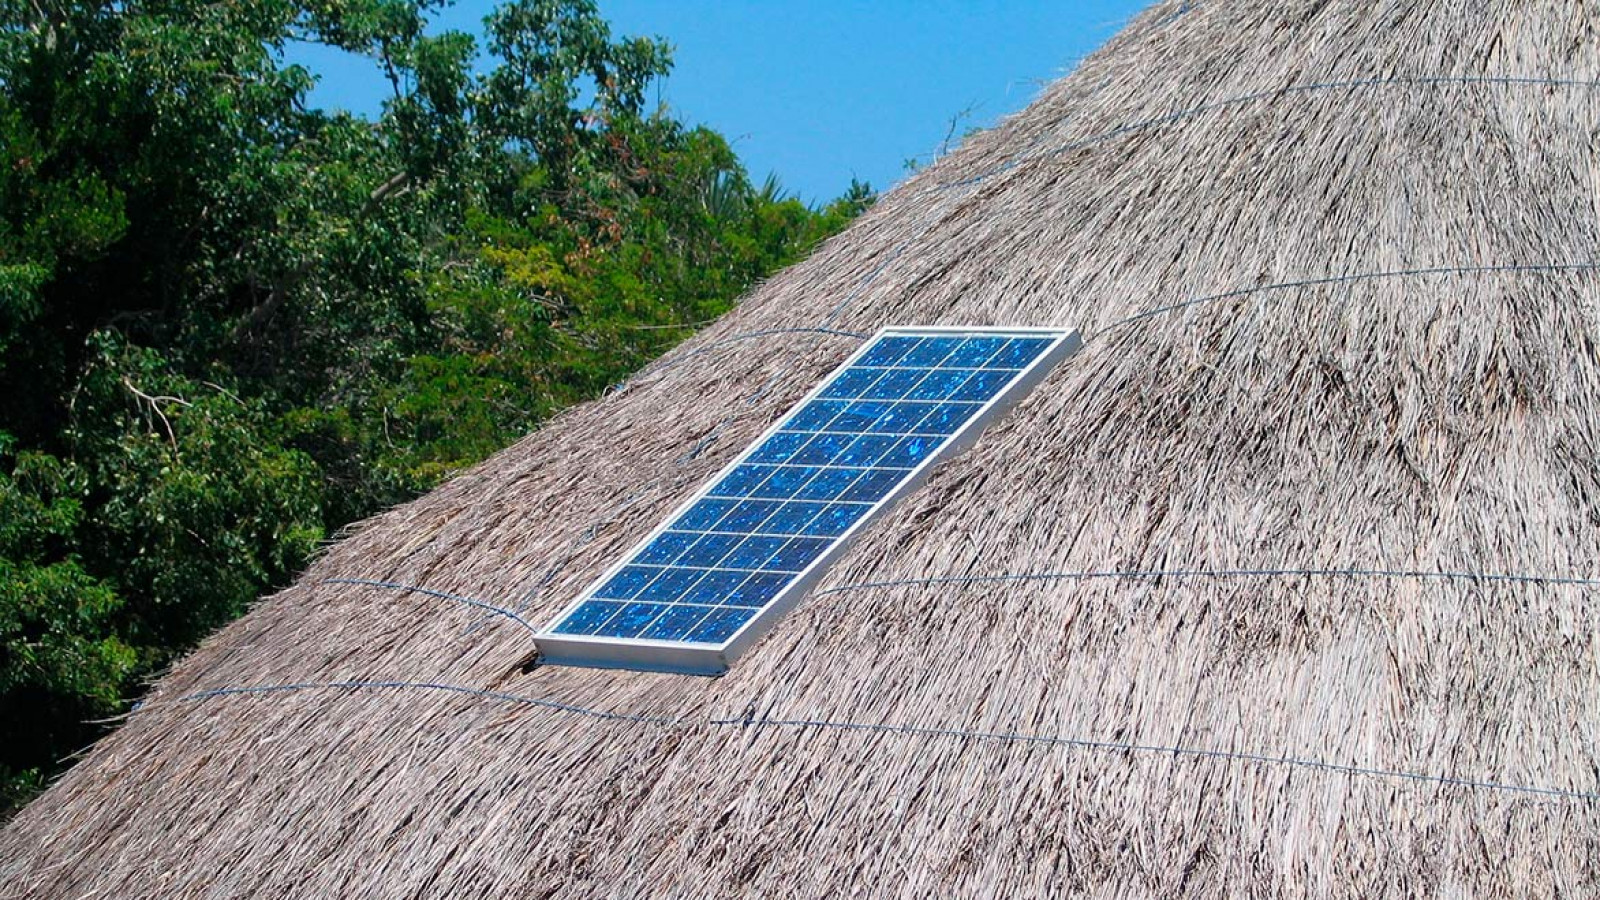 Reservas Electrificación Solar Aislada en Iberoamérica